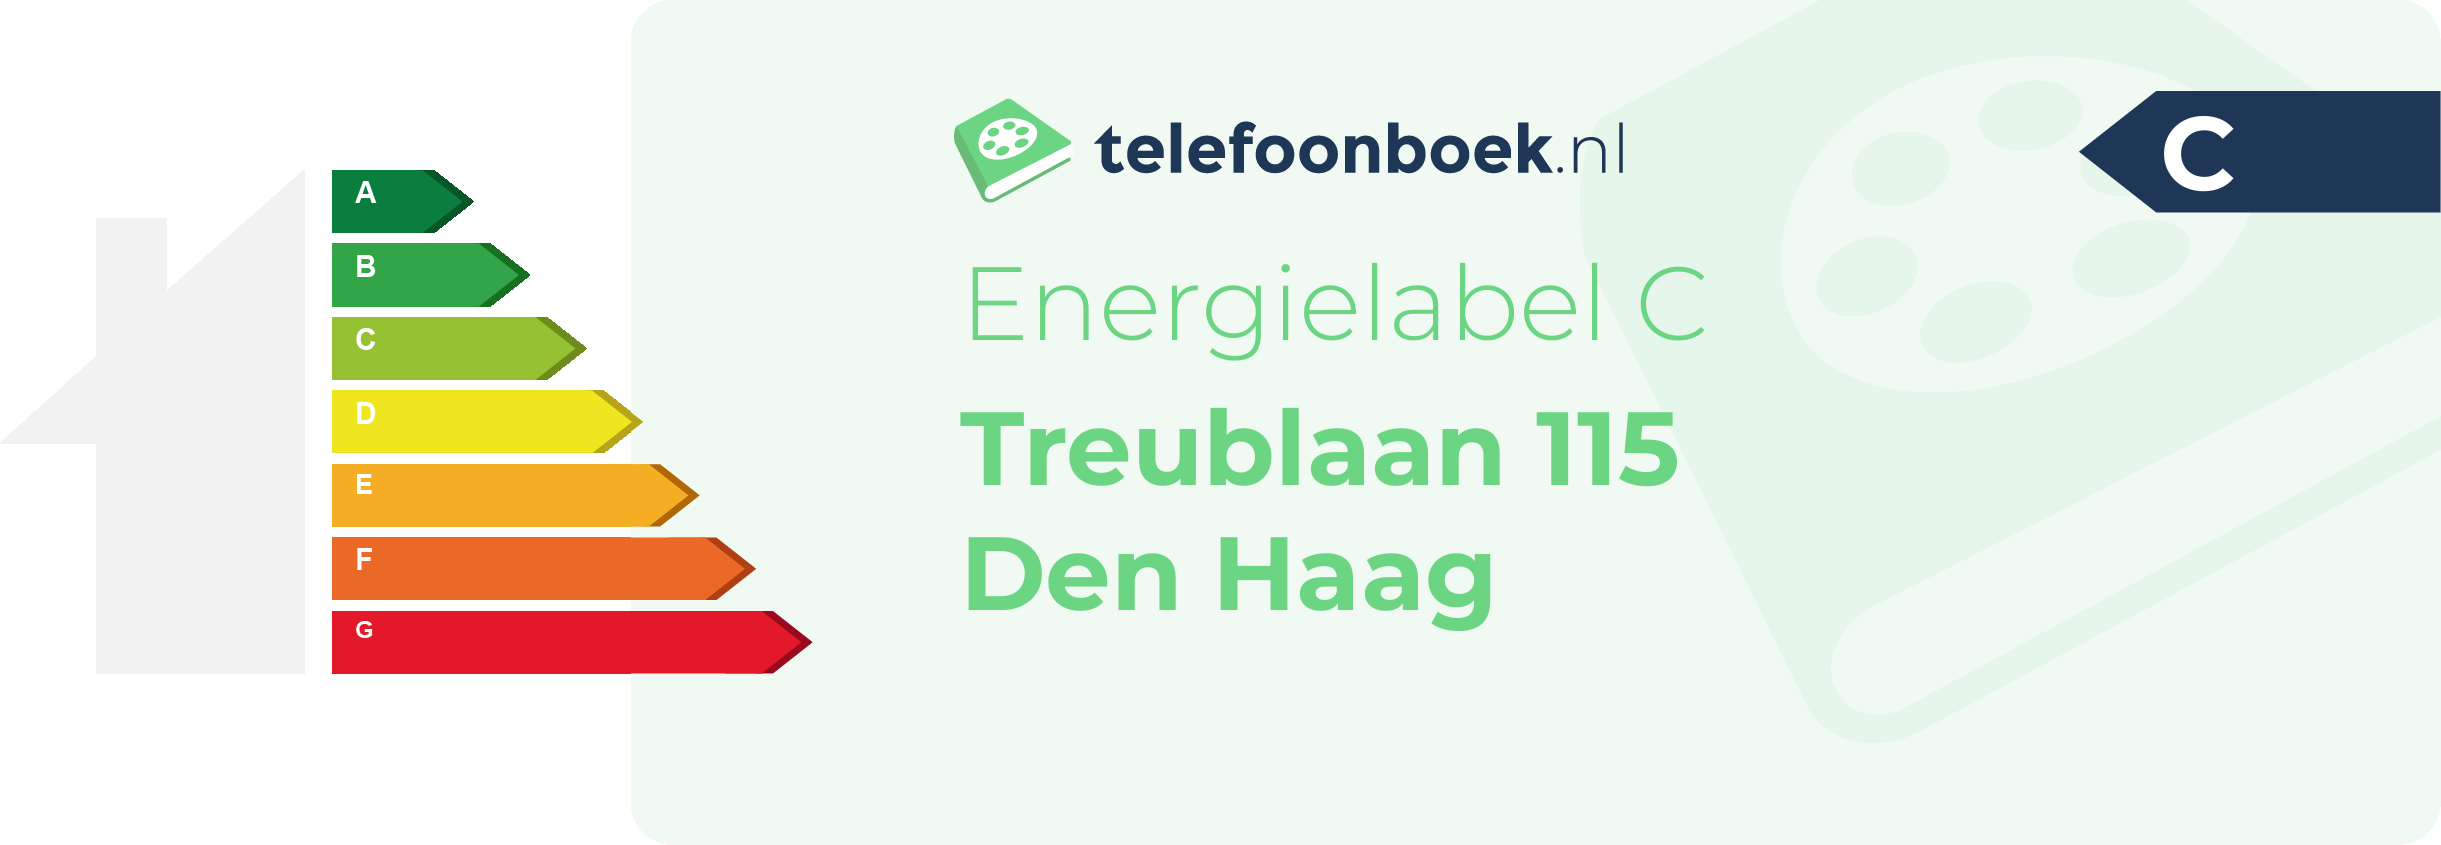 Energielabel Treublaan 115 Den Haag